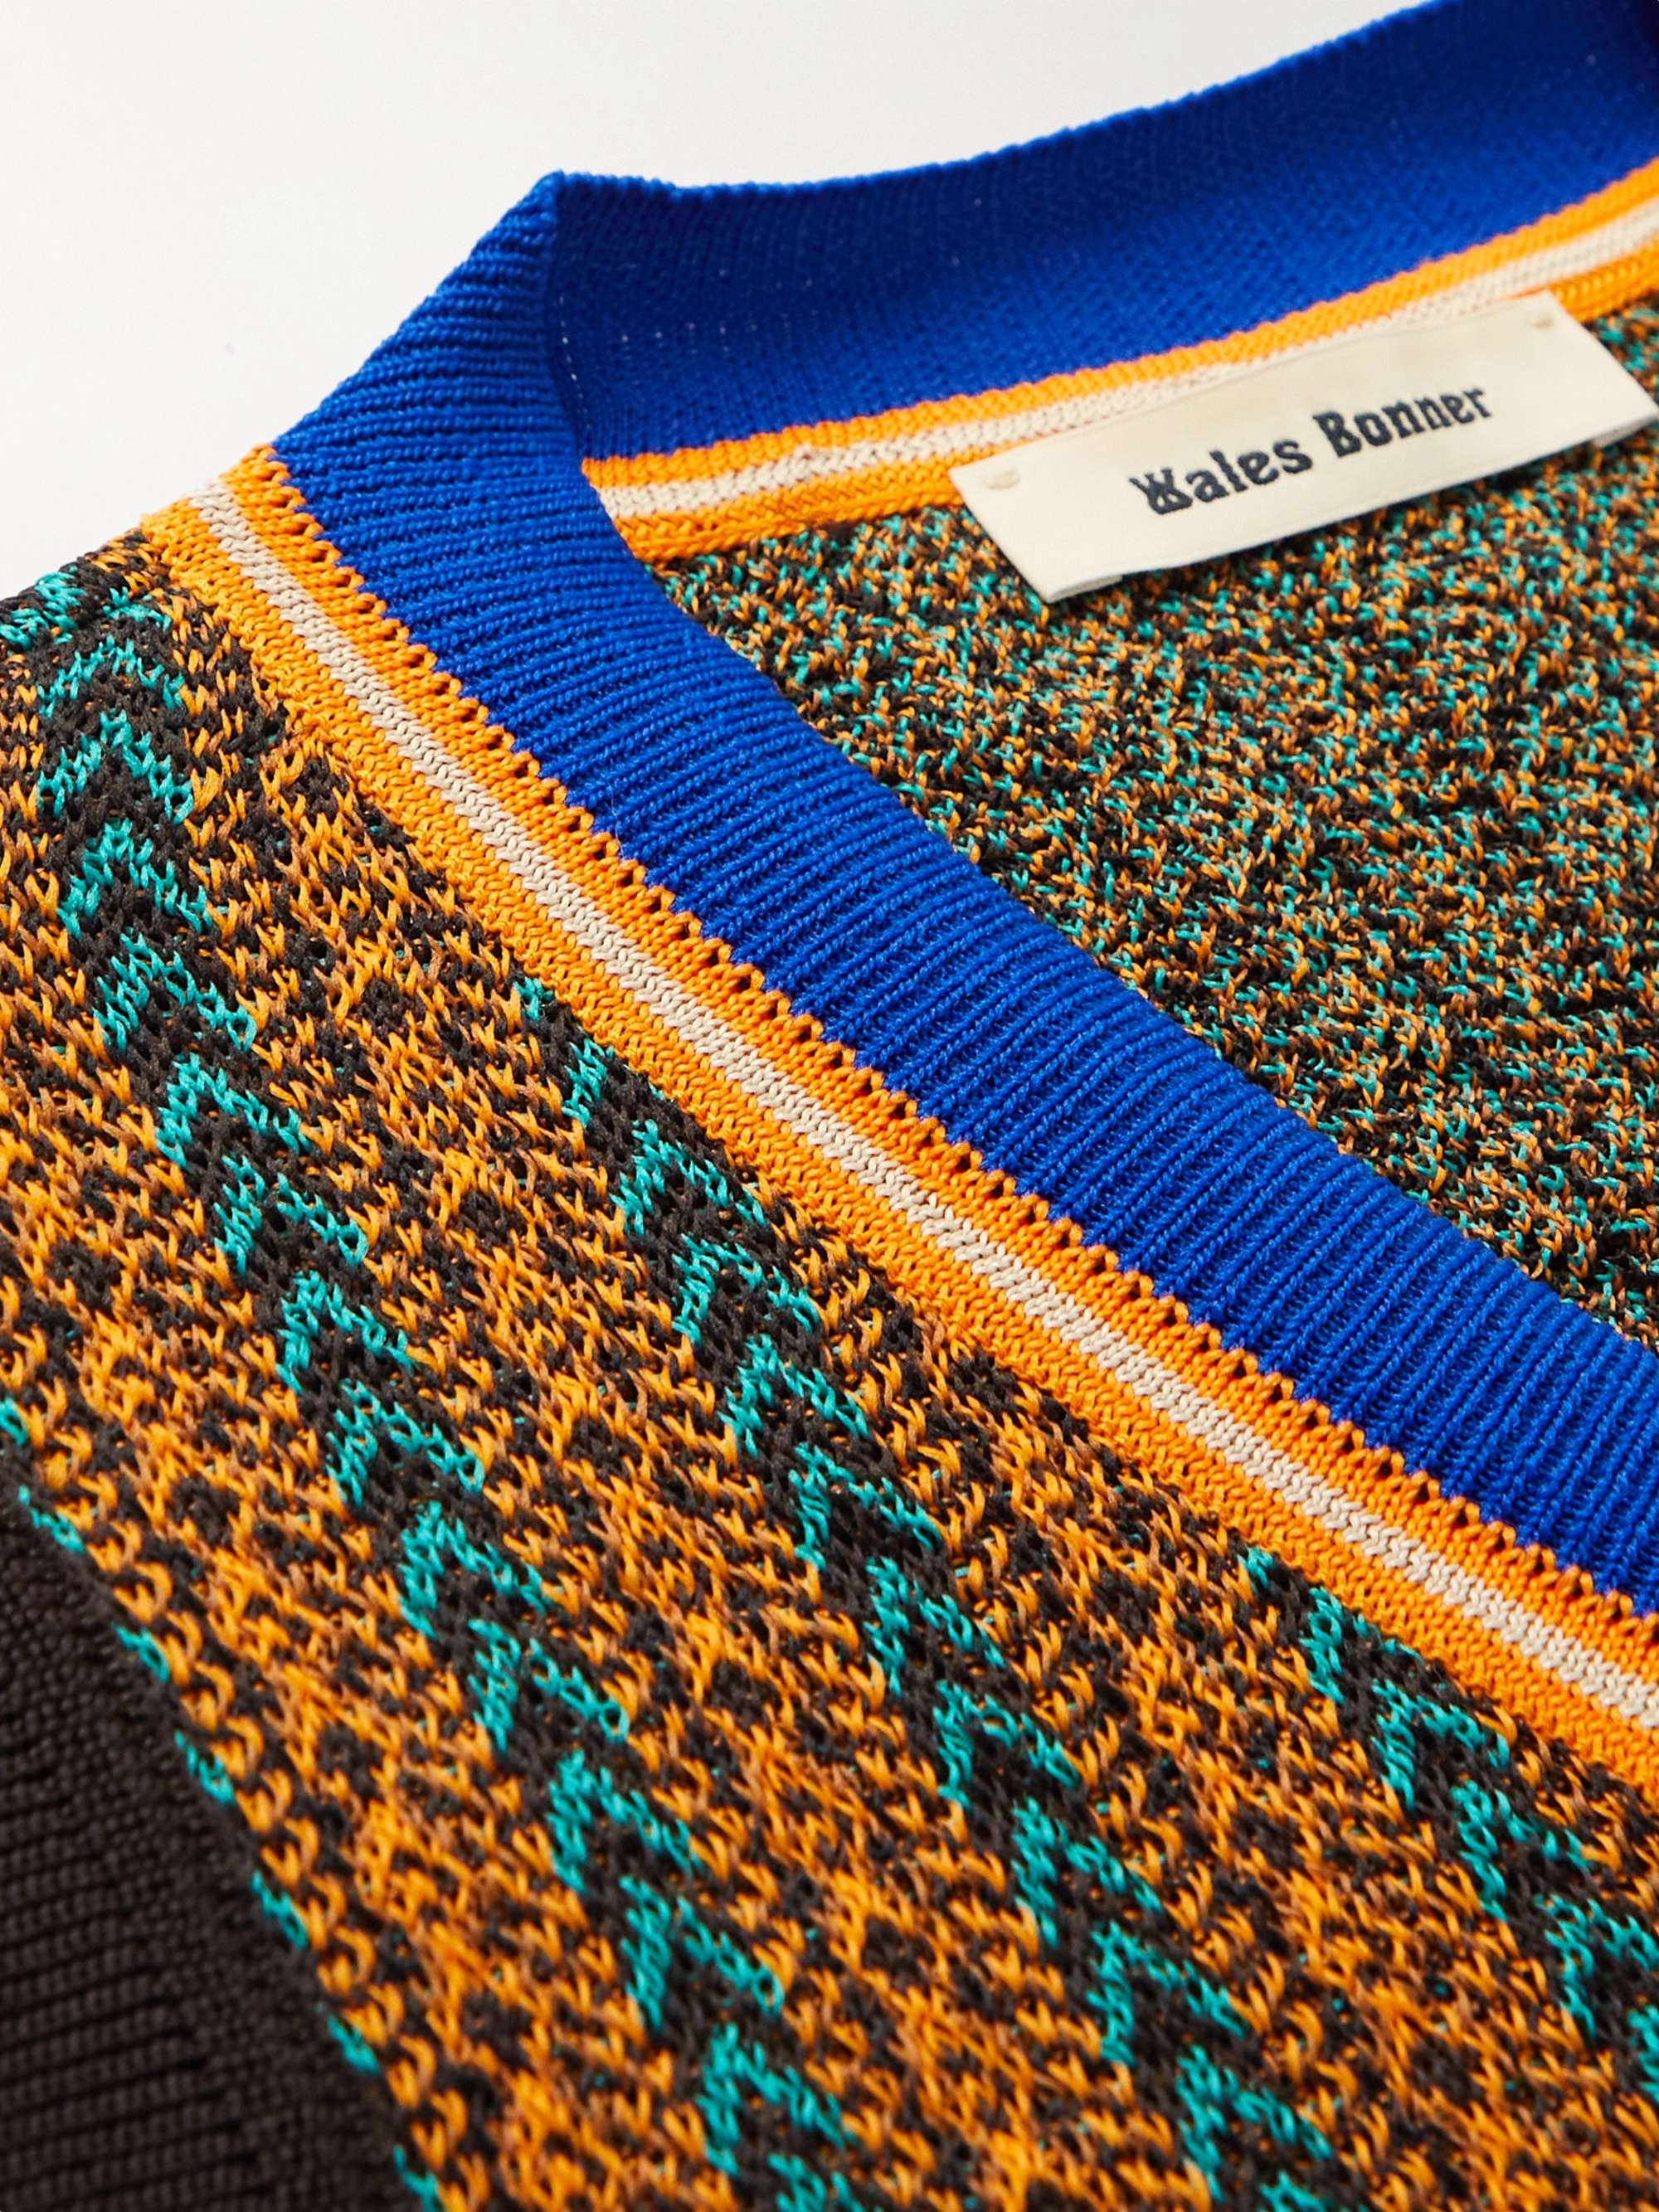 WALES BONNER Orchestre Slim-Fit Striped Jacquard-Knit Sweater Vest